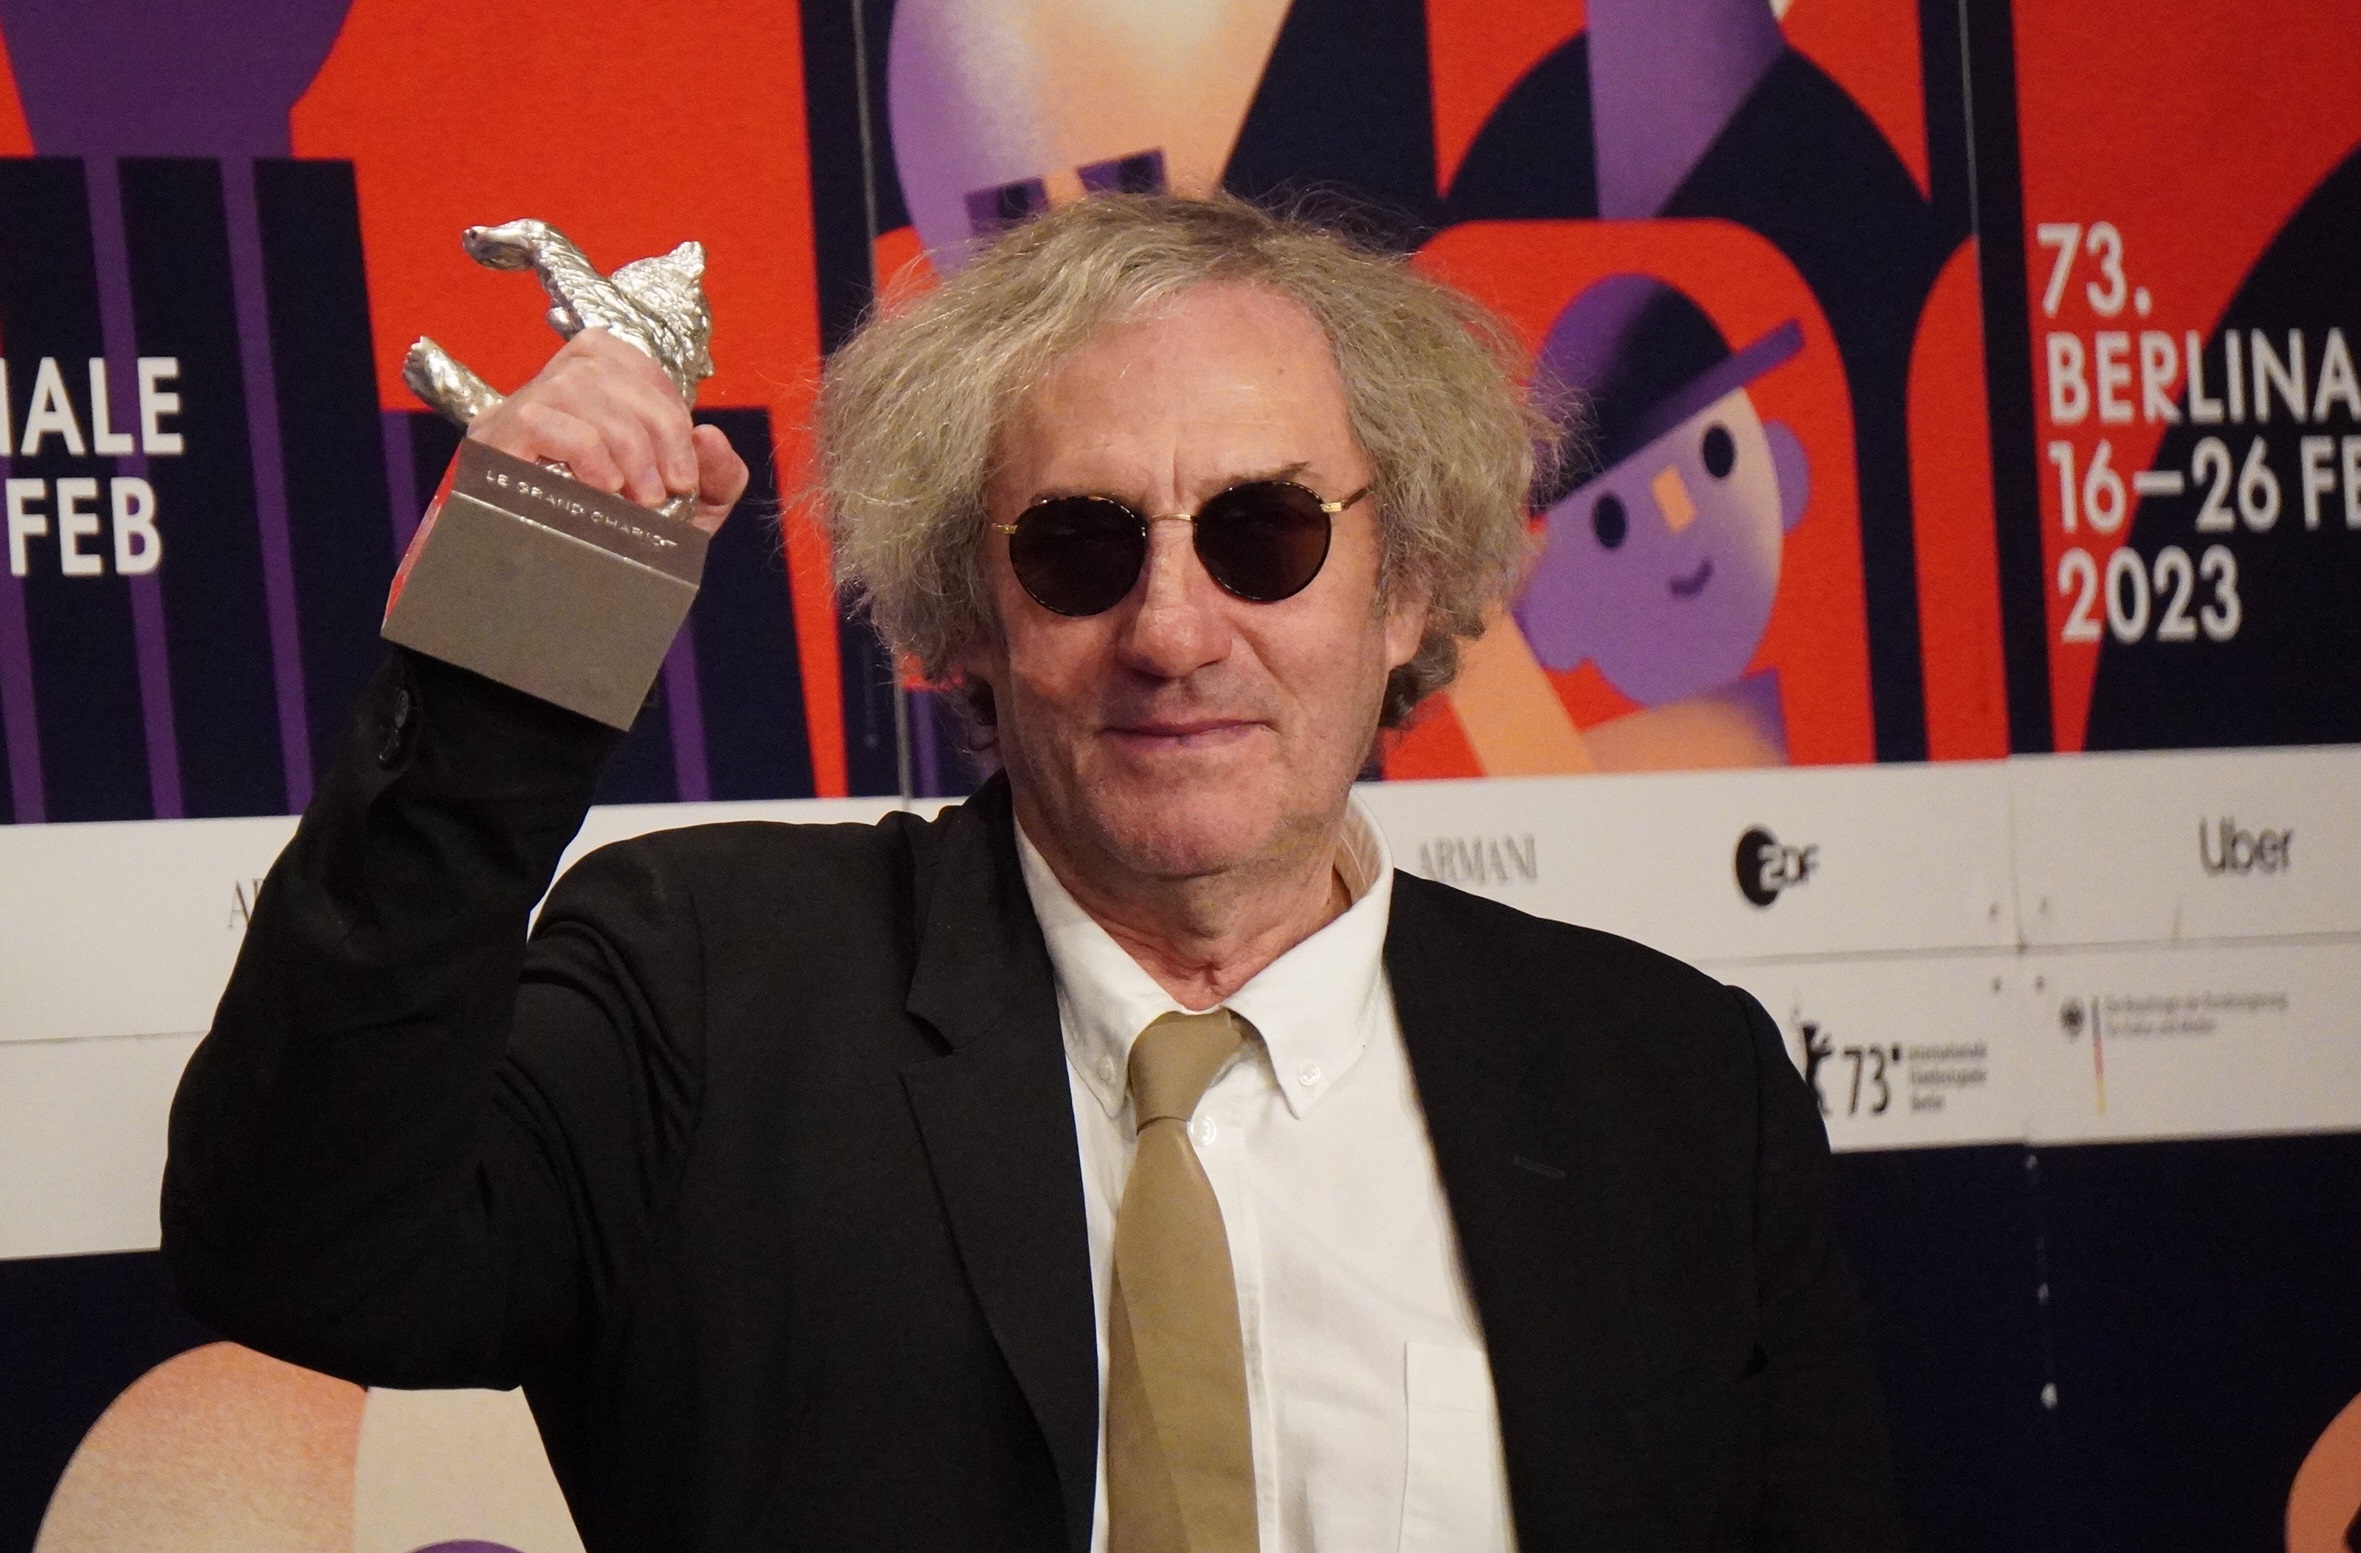 第73回ベルリン国際映画祭で監督賞を受賞し、銀熊のトロフィーを掲げるフィリップ・ガレル監督